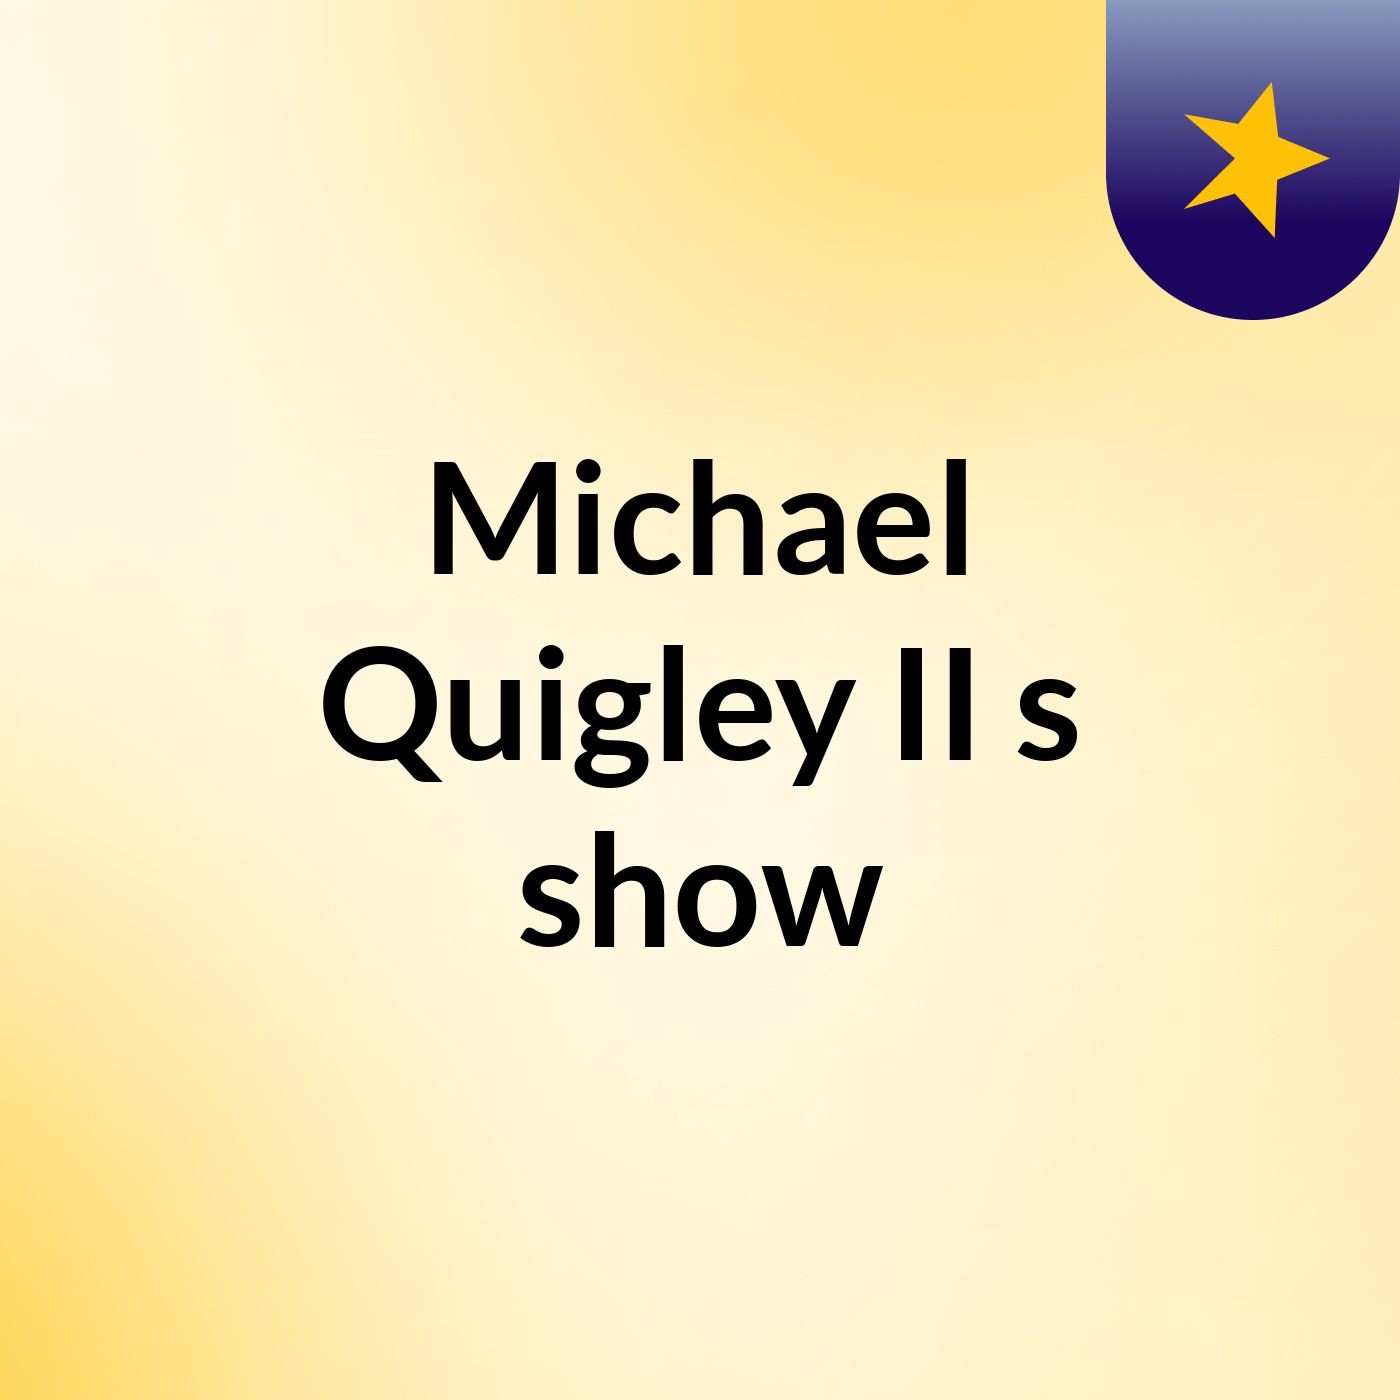 Michael Quigley II's show